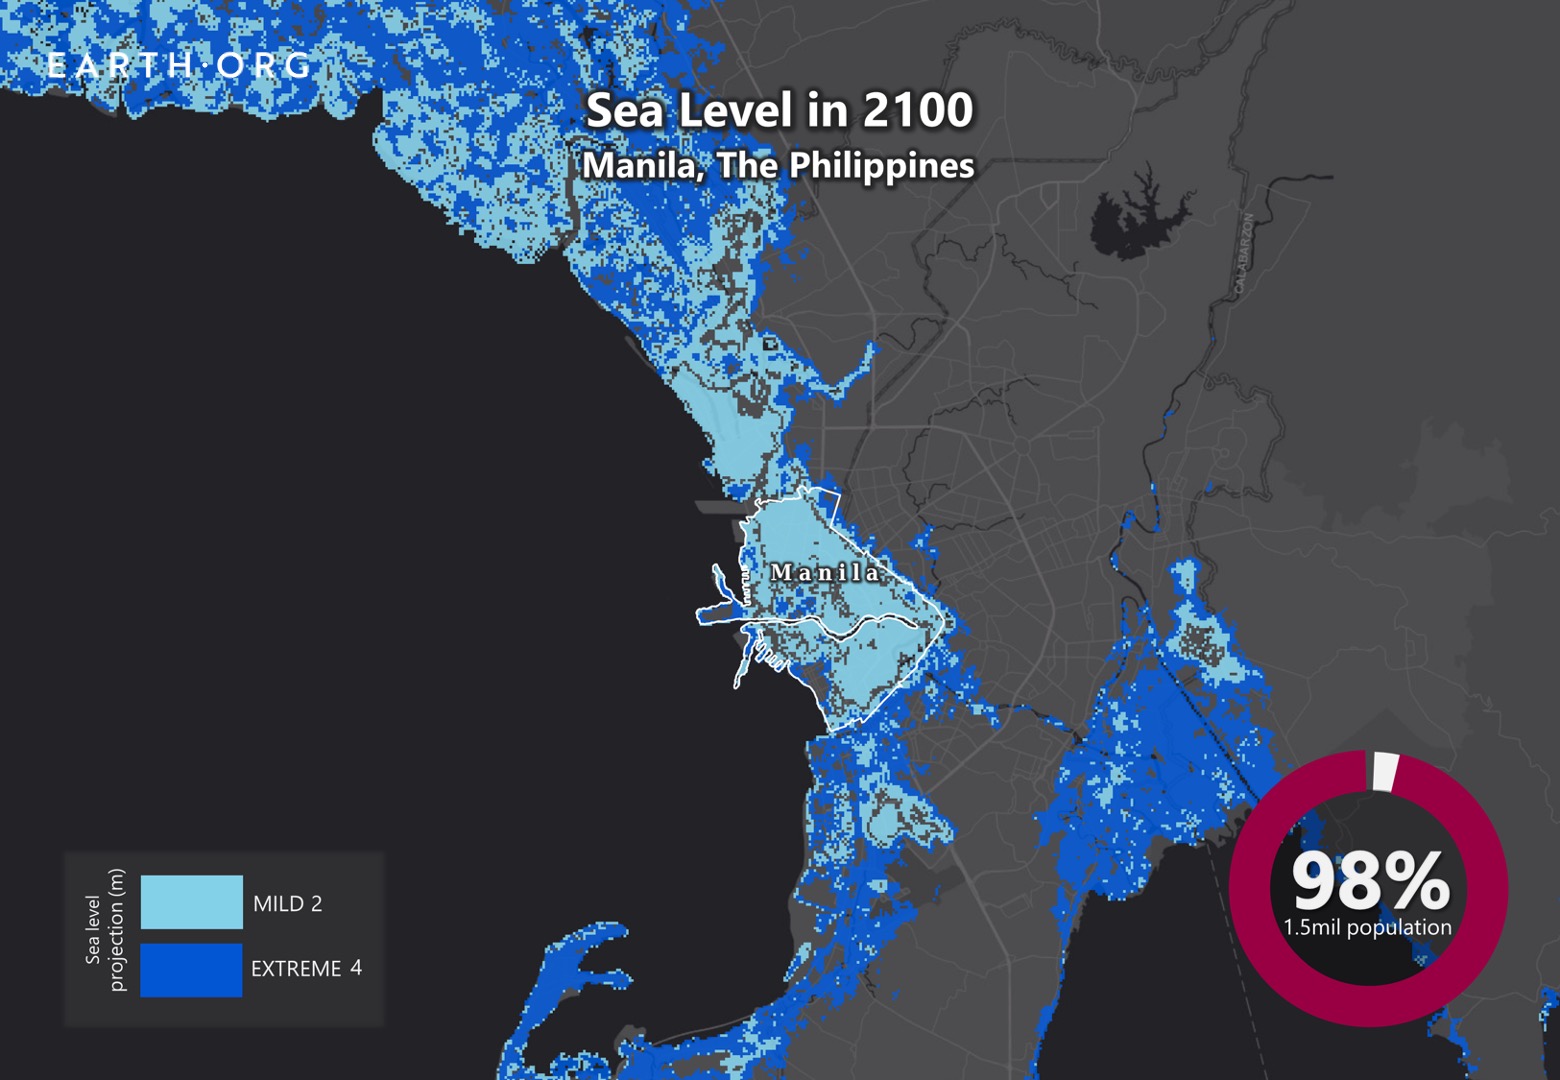 sea level rise by 2100 manila